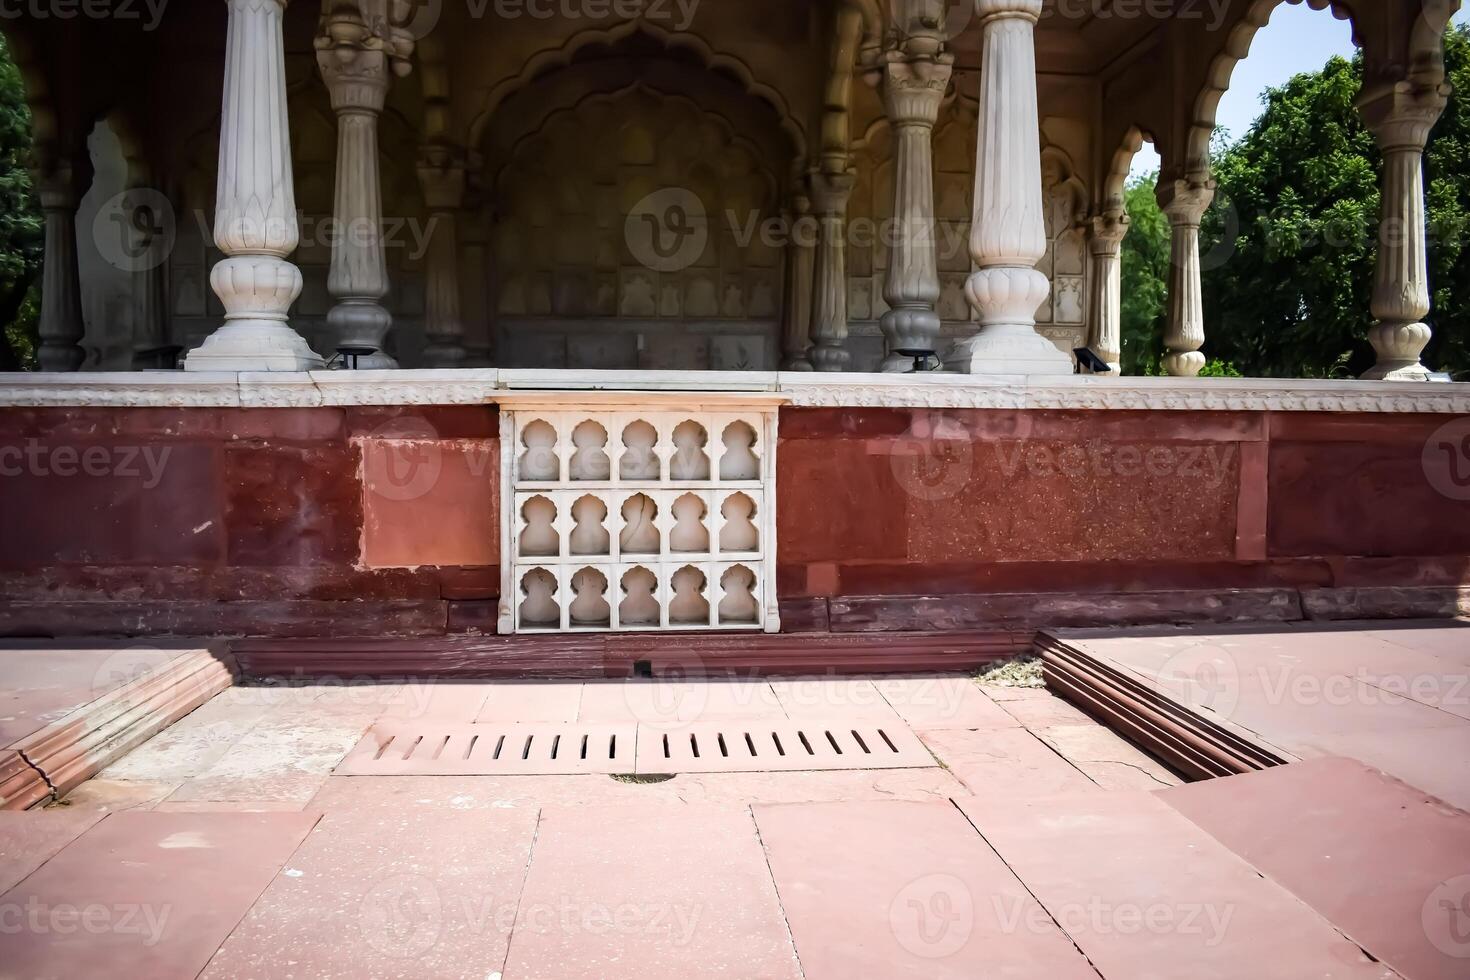 architectural détails de lal qila - rouge fort situé dans vieux Delhi, Inde, vue à l'intérieur delhi rouge fort le célèbre Indien Repères photo